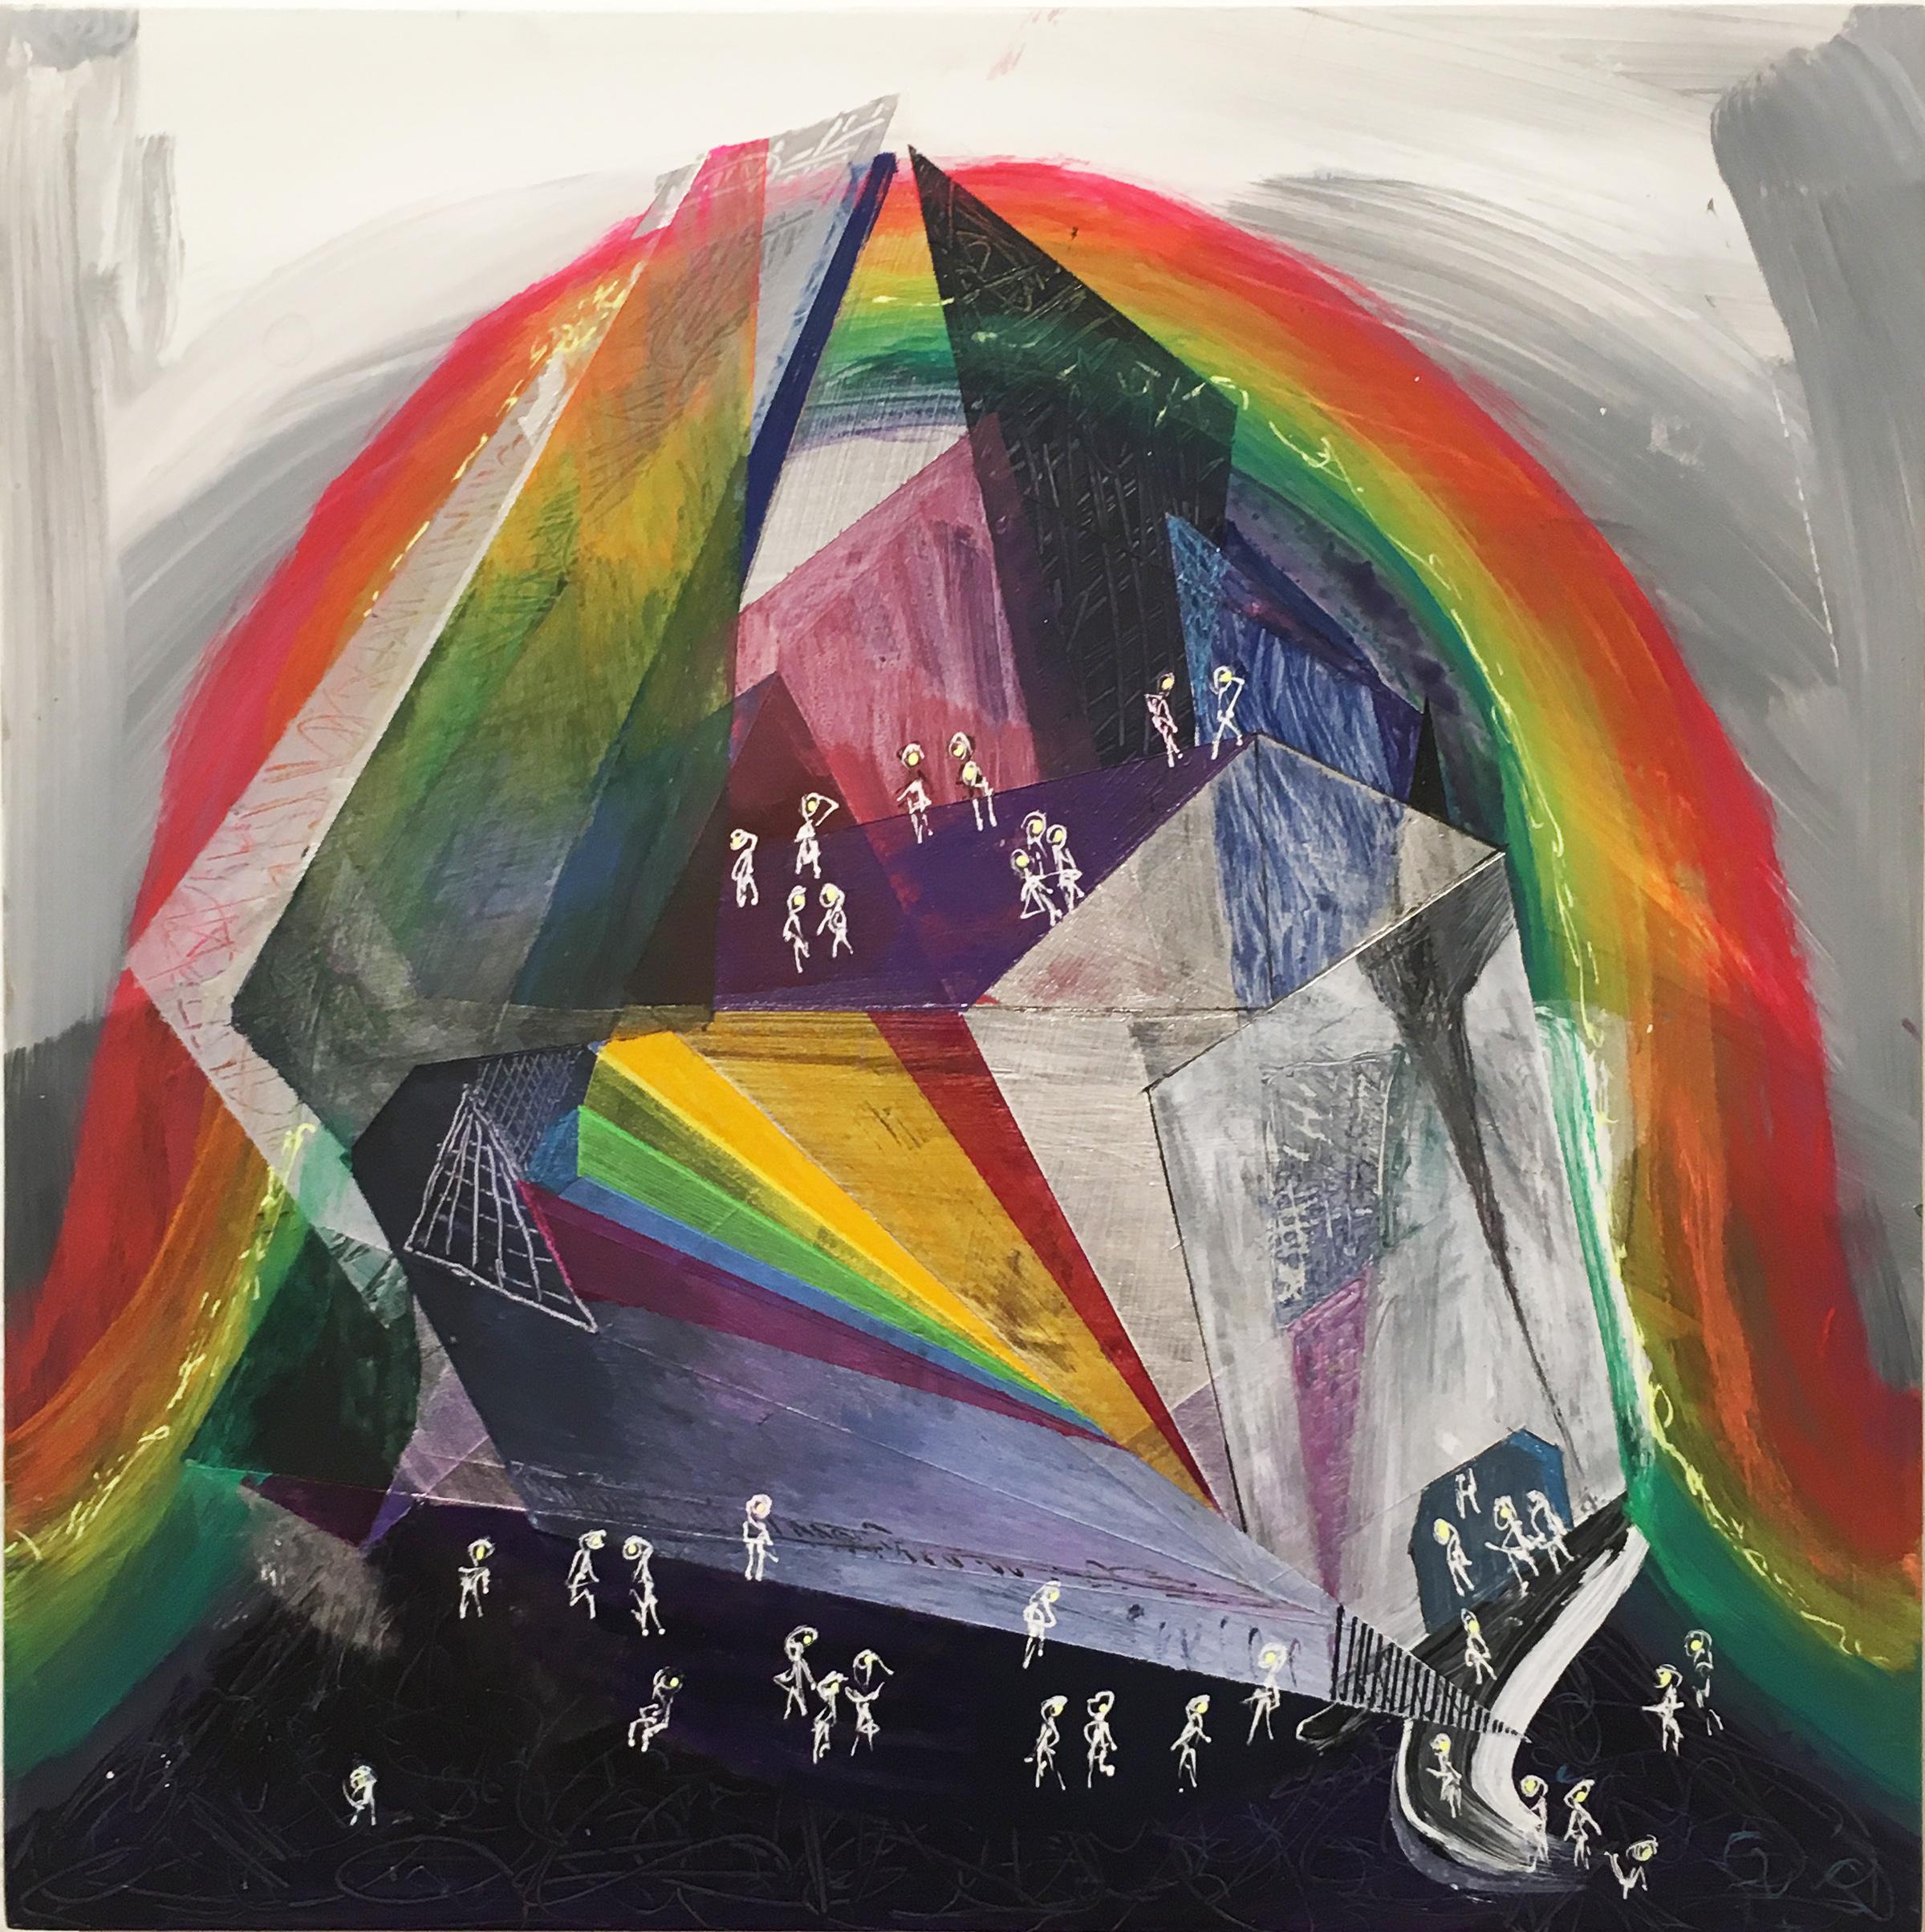 Das Museum of Amusement and Rainbow Light, Acryl, Aquarell und Tinte auf Tafel (Zeitgenössisch), Mixed Media Art, von Loren Abbate